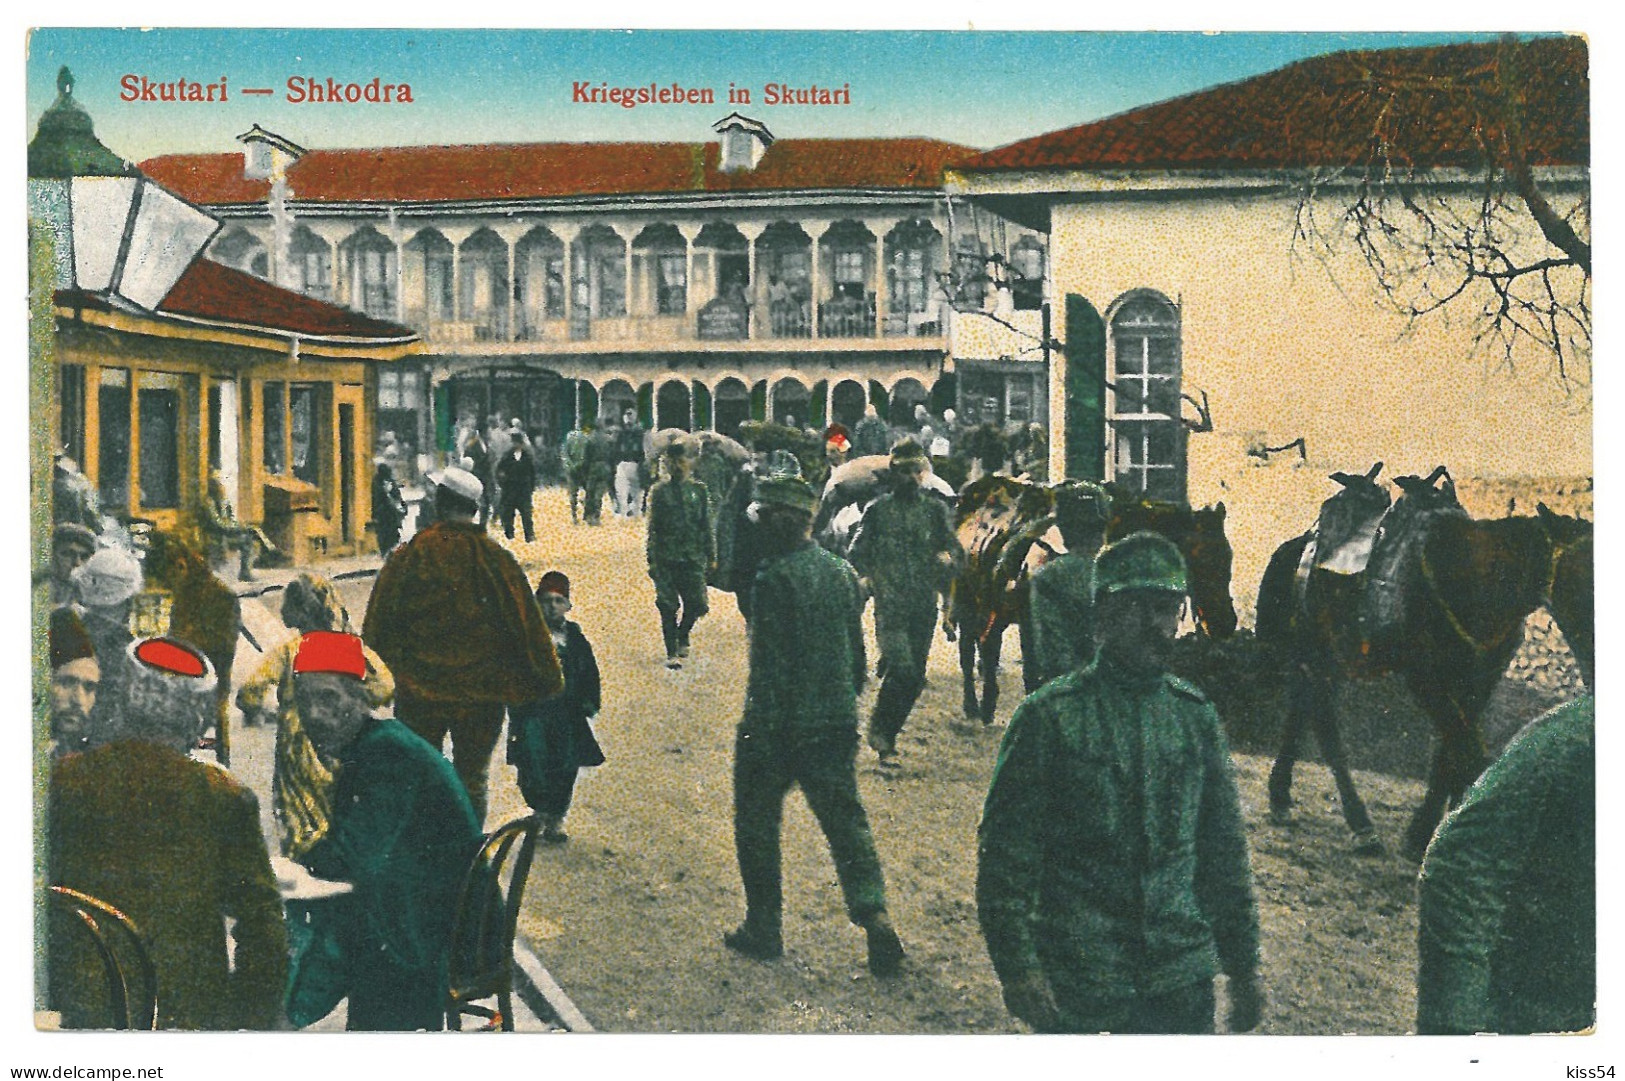 AB 3 - 20182 SKUTARI, Market, Albania - Old Postcard - Unused - Albanie